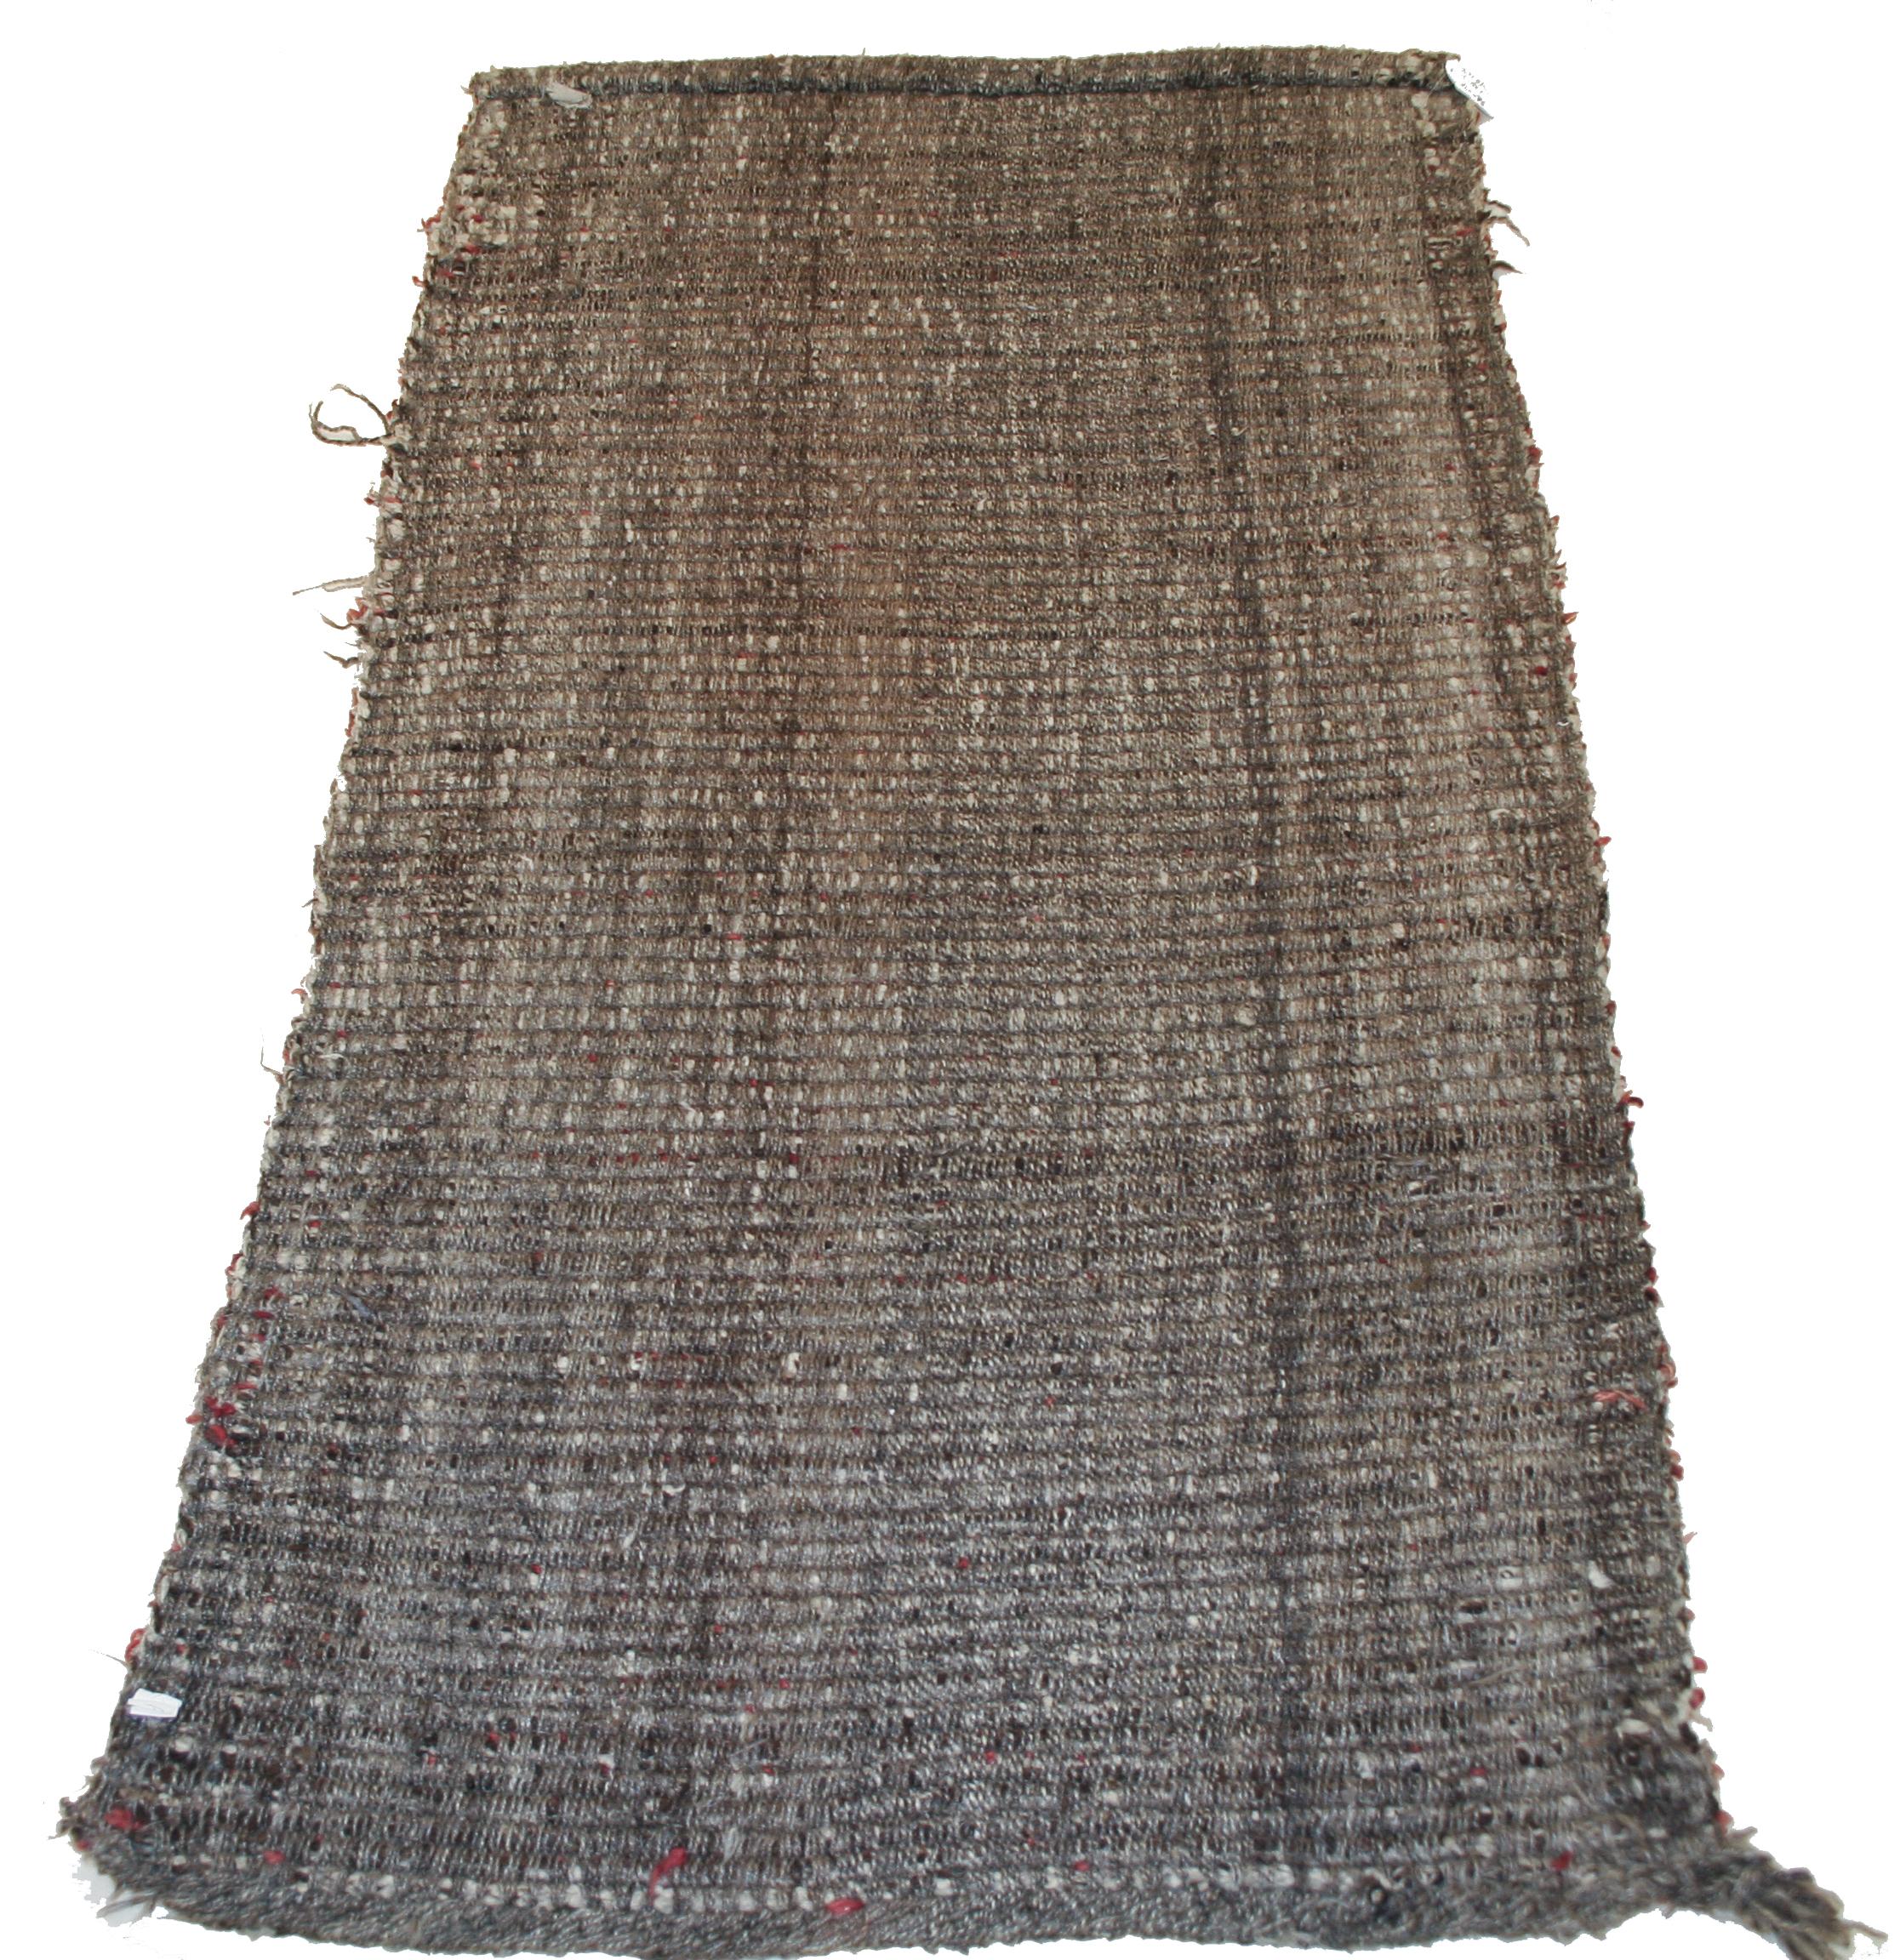 Ein ziemlich einzigartiges Beispiel für einen einfarbigen Wangden-Teppich, der sich durch die charakteristische Rückseite mit Kettfäden auszeichnet. Typisch für die Gruppe ist die Verwendung von lanolinreicher Wolle, die dem Rot einen besonderen